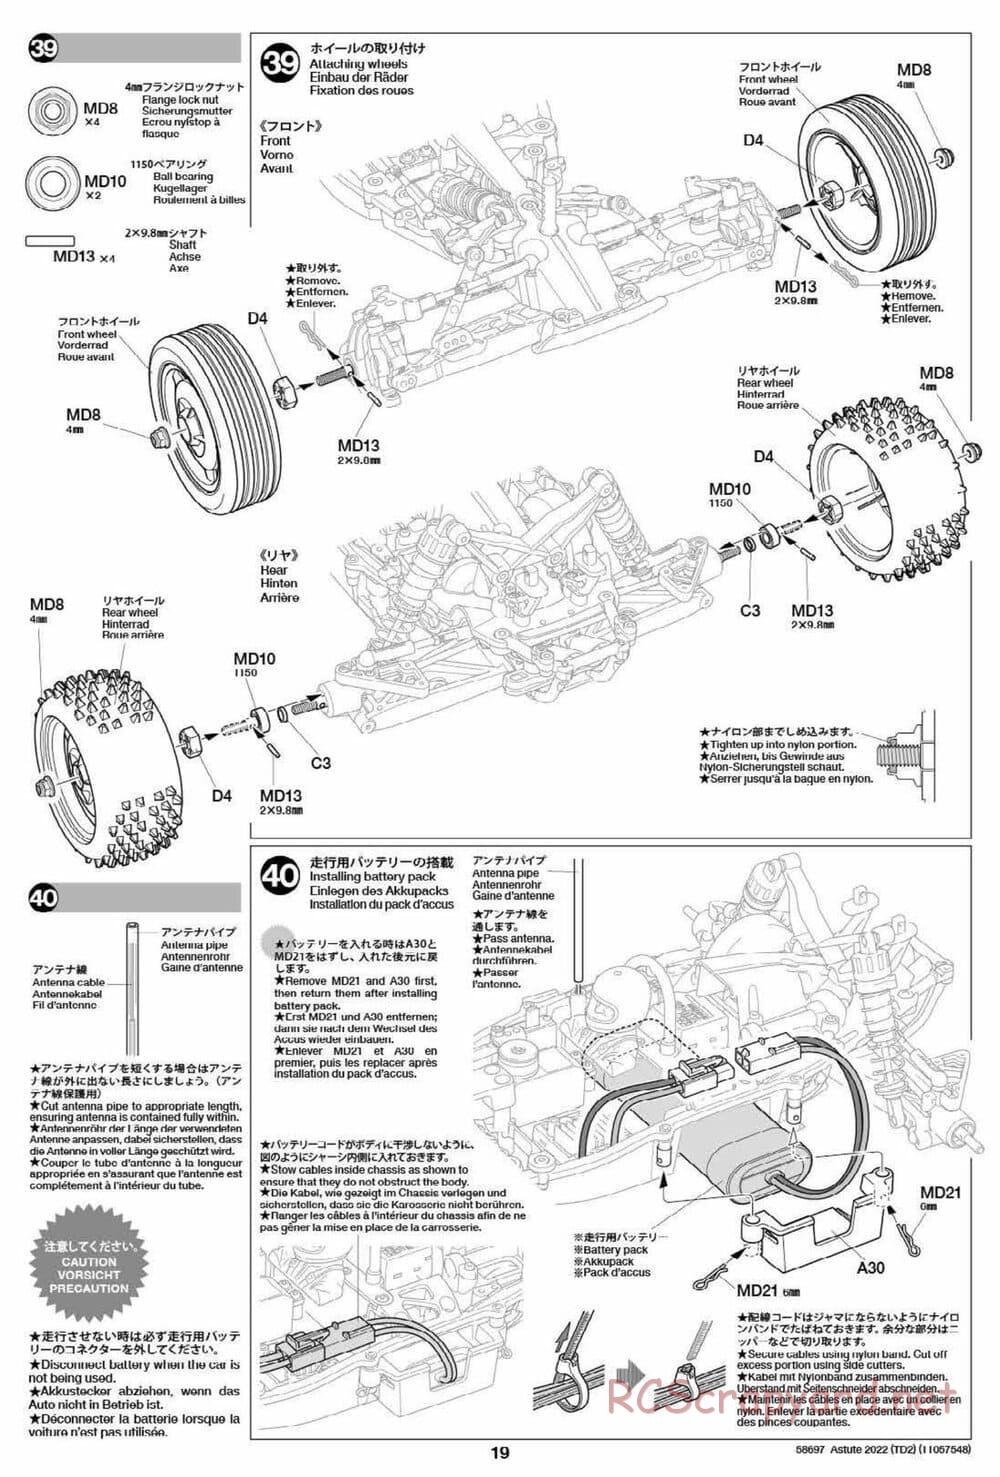 Tamiya - Astute 2022 - TD2 Chassis - Manual - Page 19